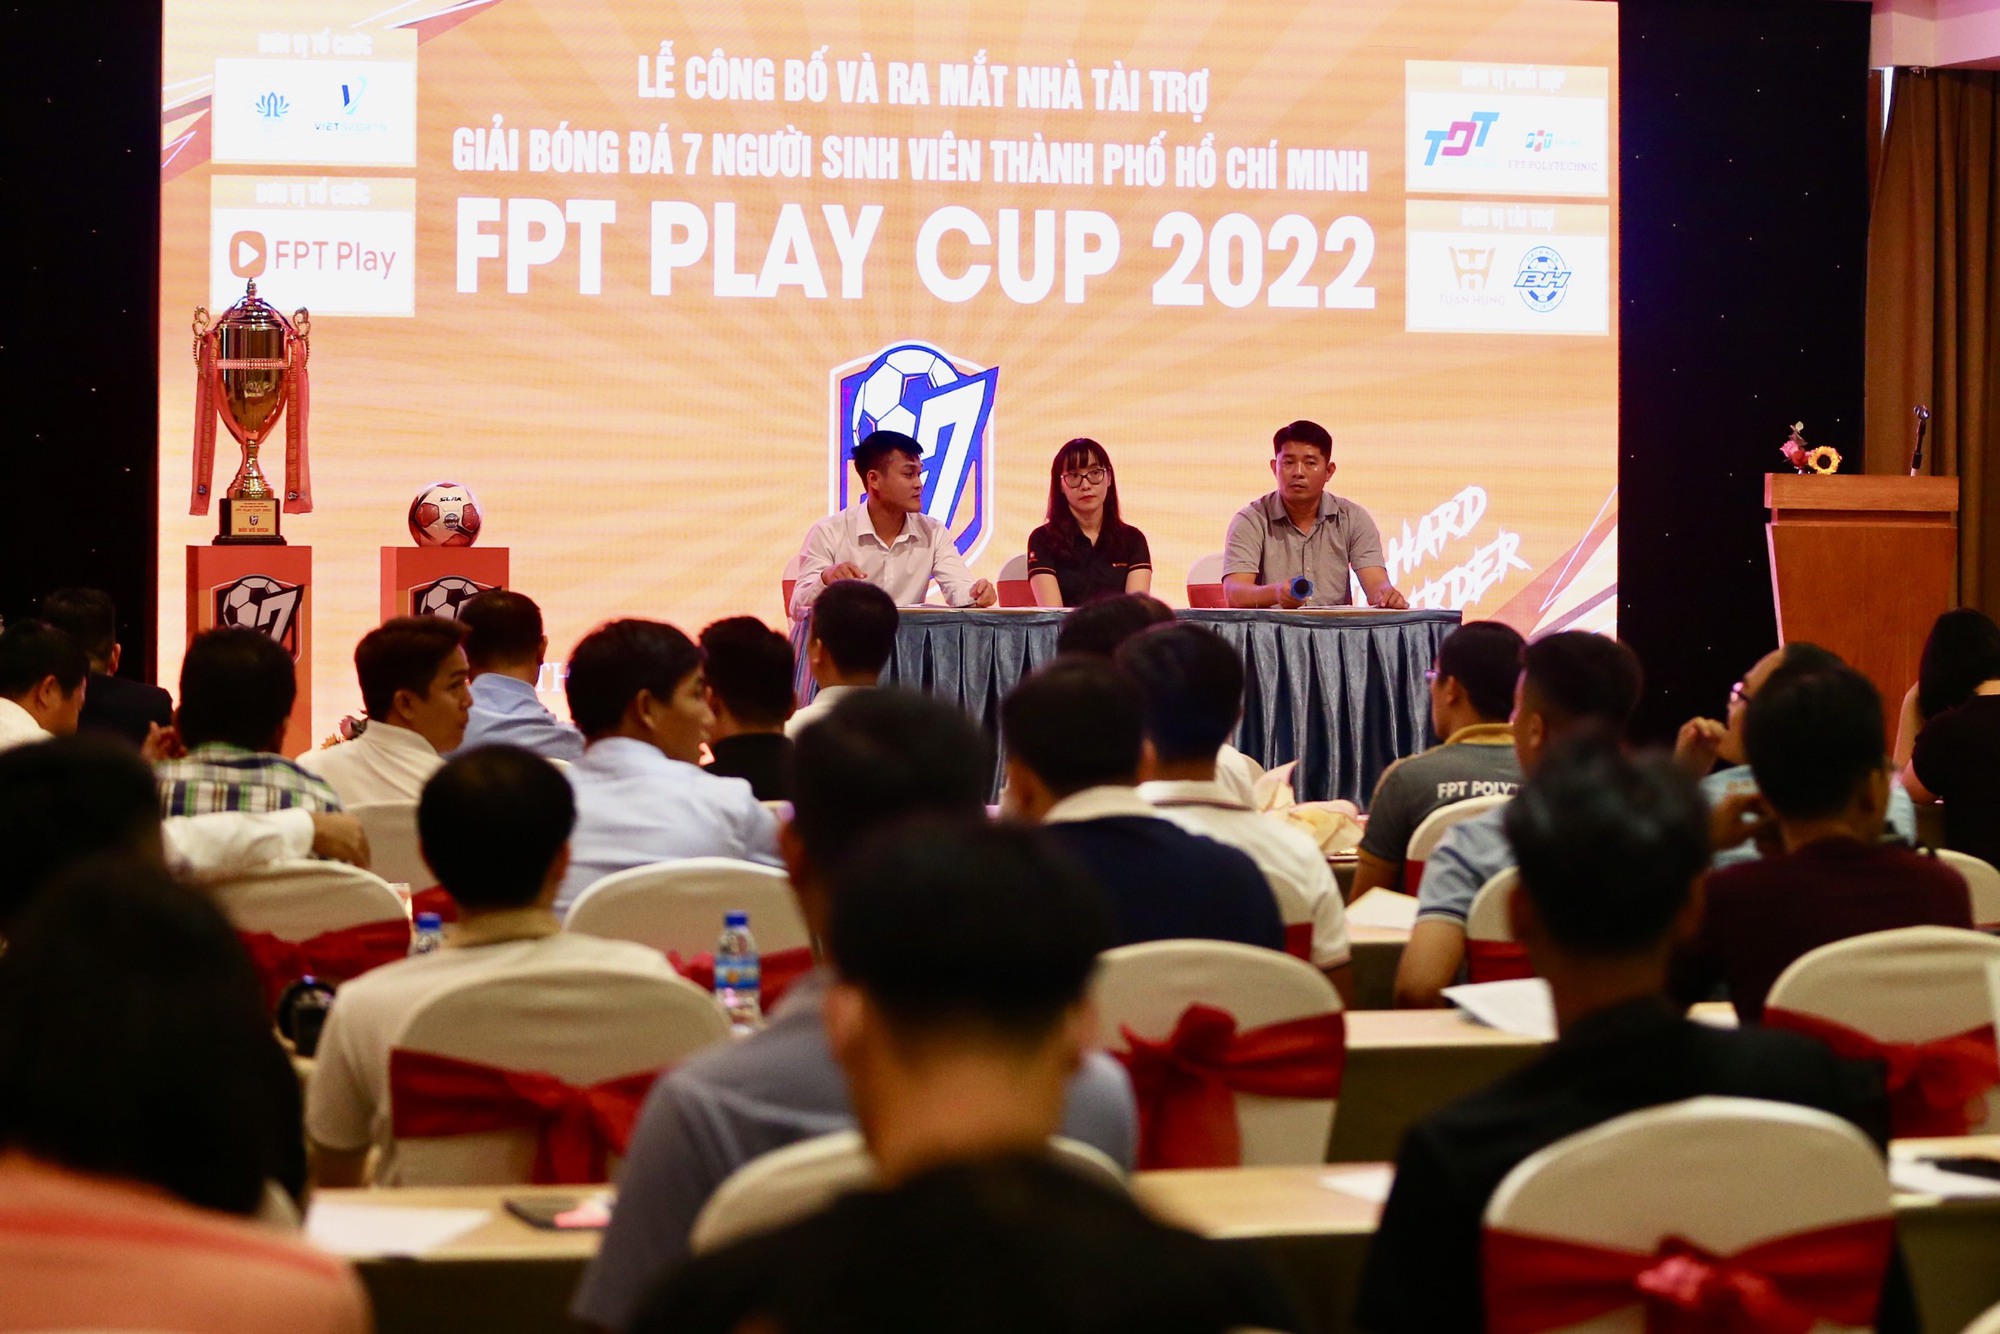 Lần đầu tiên tổ chức Giải bóng đá 7 người sinh viên TP.HCM 2022 - Ảnh 1.